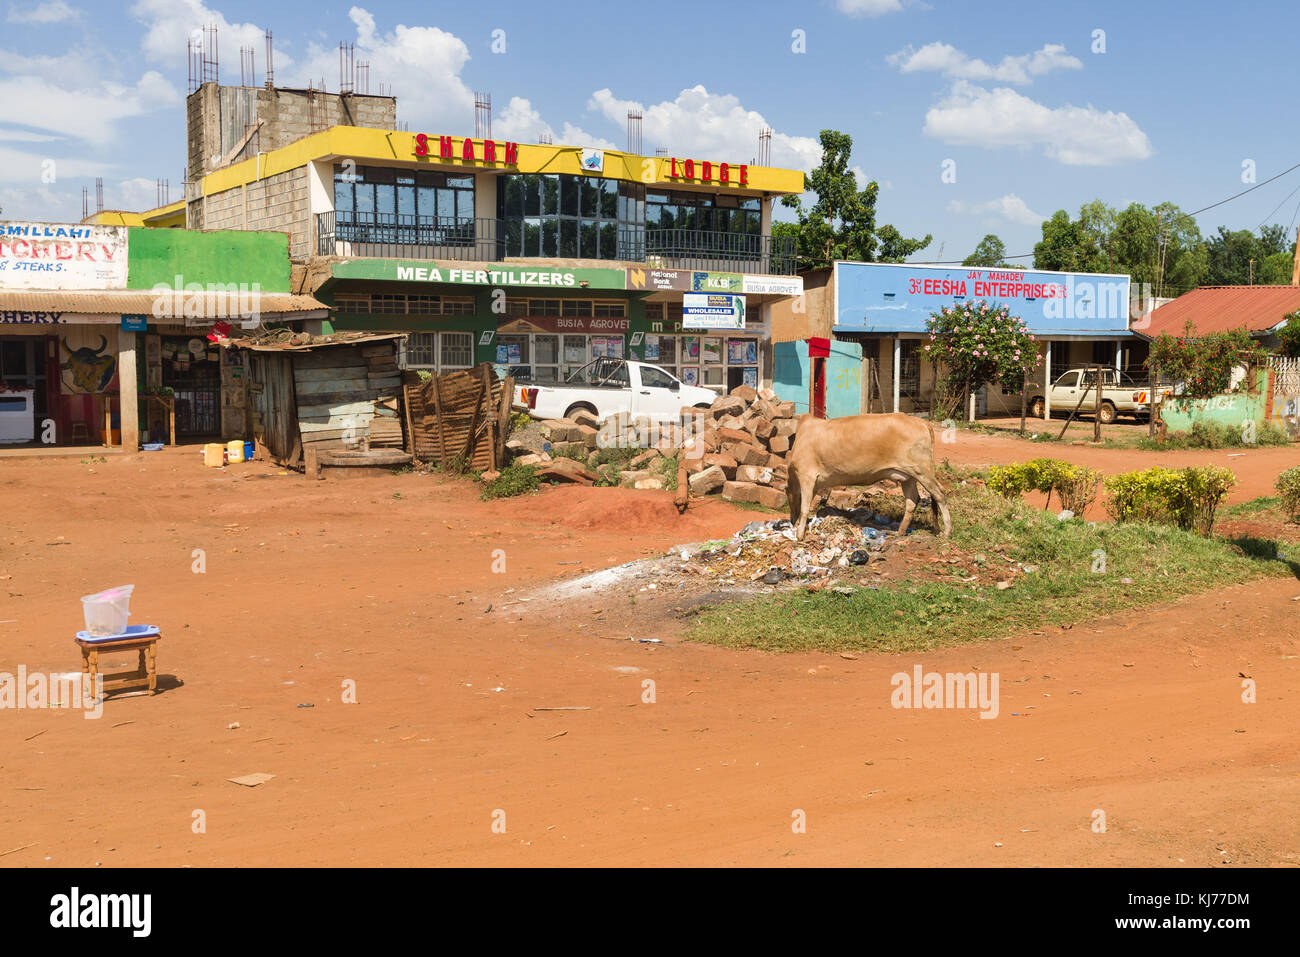 .Une vache solitaire broute des ordures jetées à l'extérieur de petits bâtiments dans une ville, l'Ouganda, l'Afrique de l'Est Banque D'Images